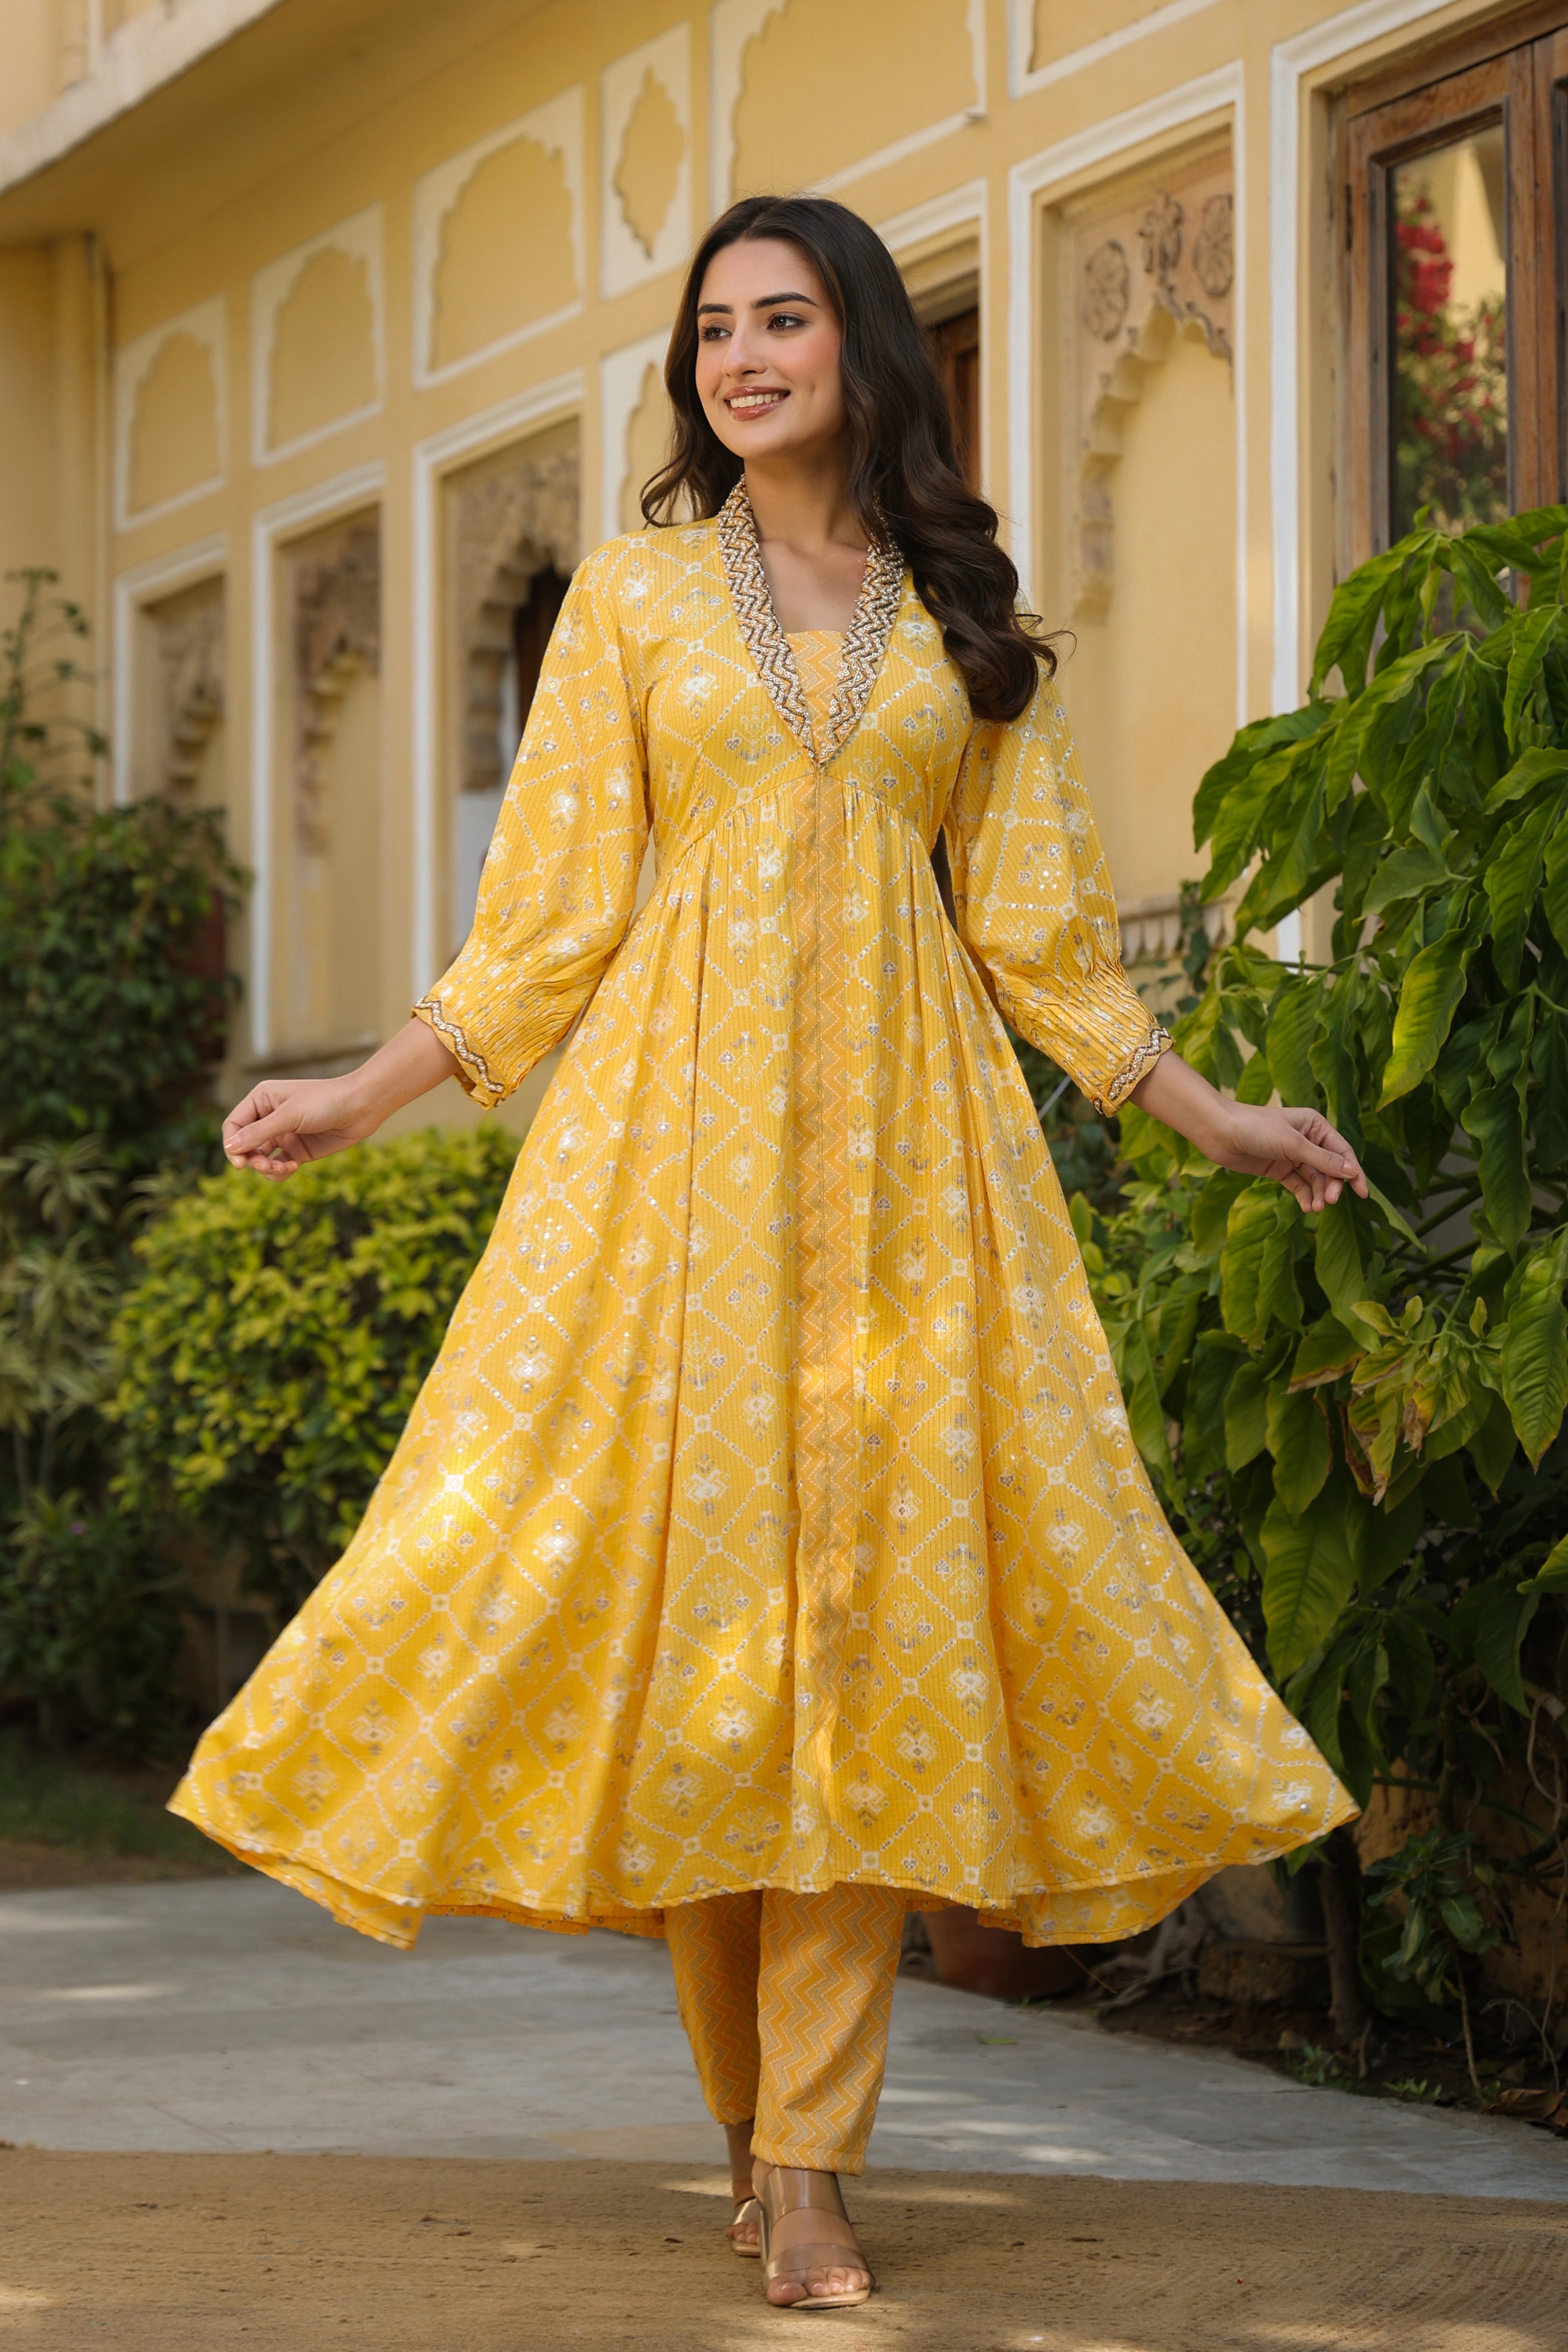 Do you like wearing an Indian ethnic wear dress? - Quora